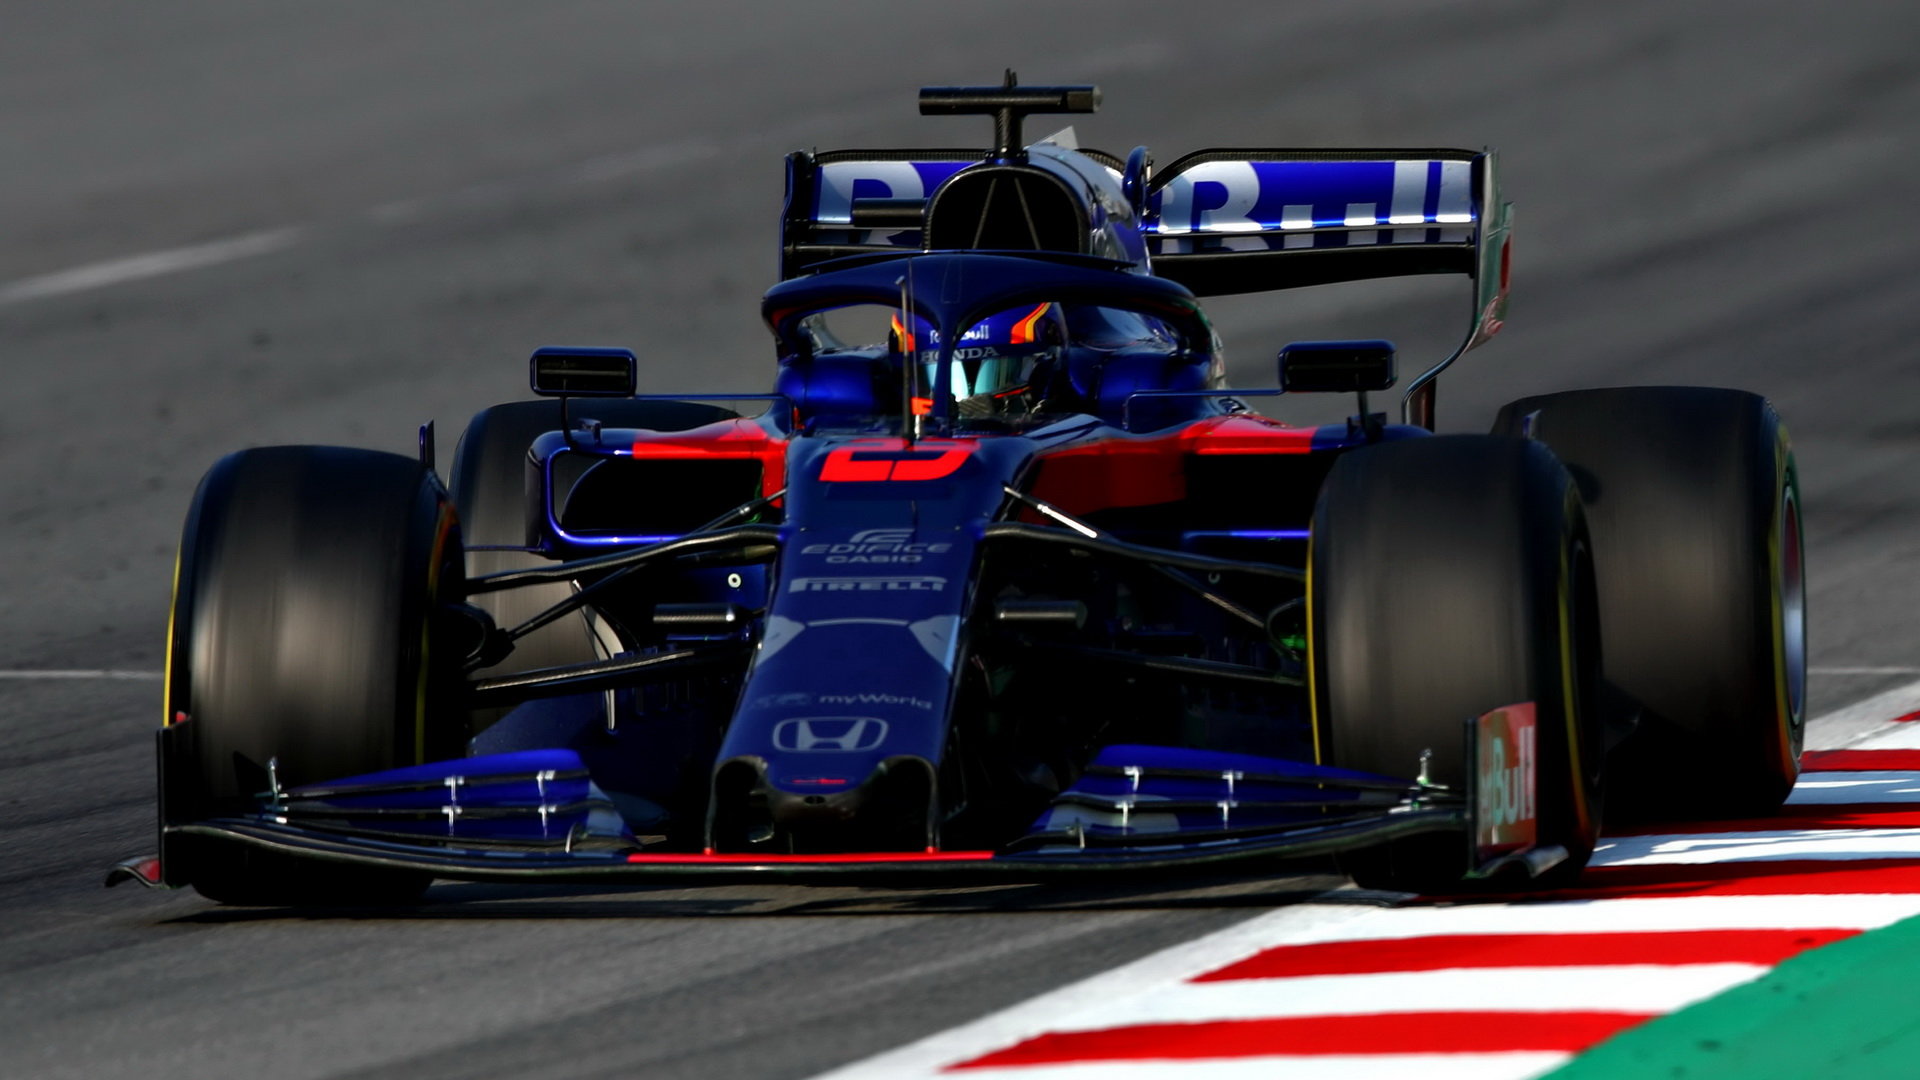 Alexander Albon ve voze Toro Rosso STR14 - Honda při čtvrtém dnu testů v Barceloně